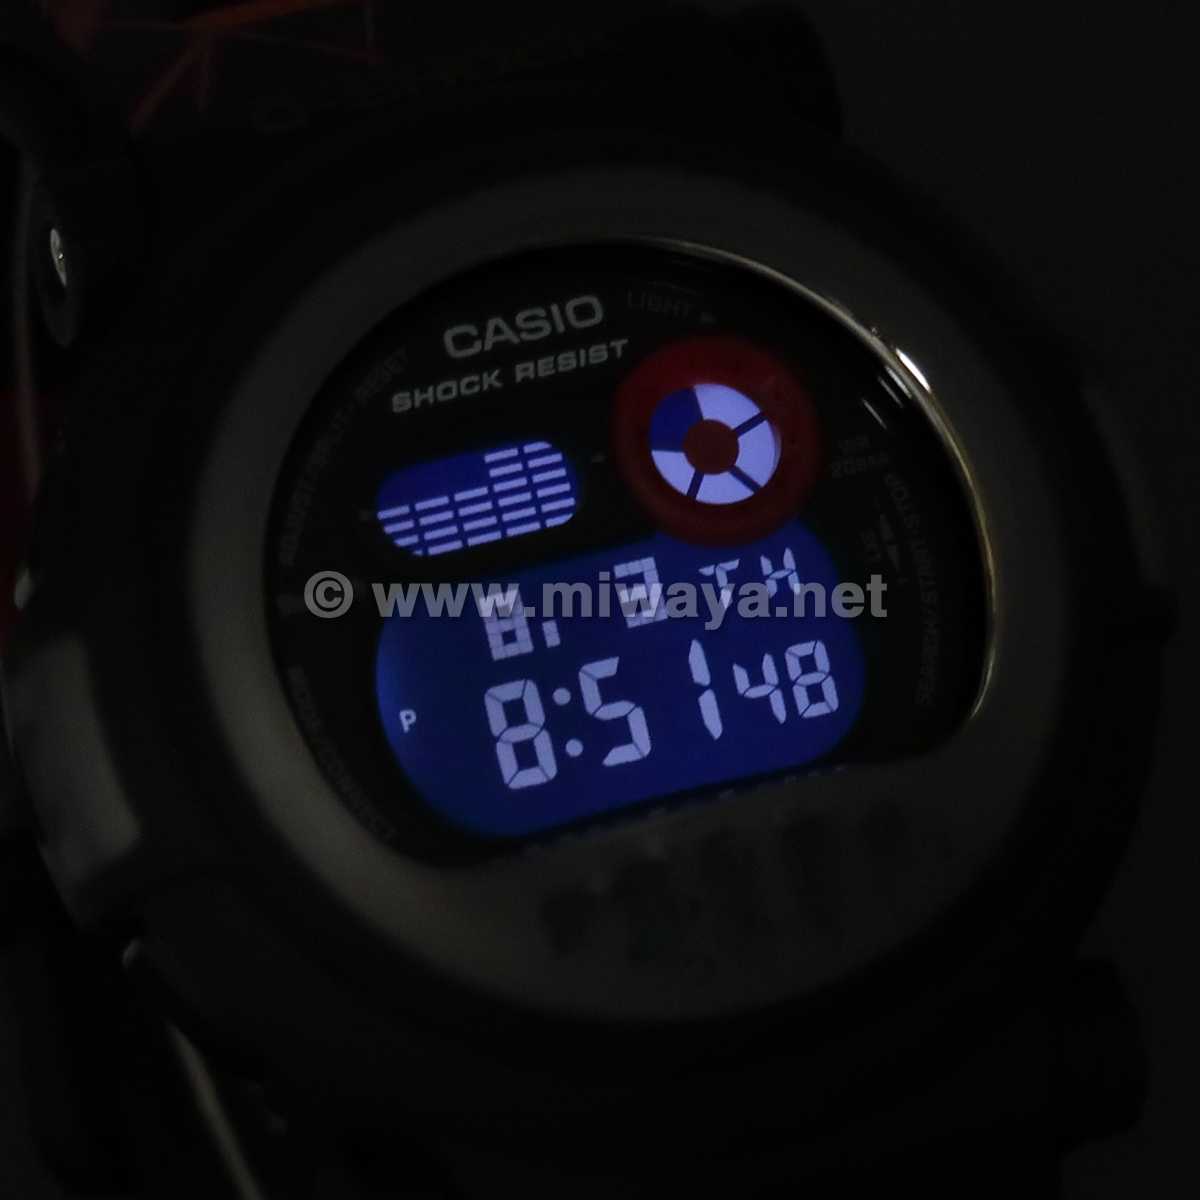 CASIO G-SHOCK G-B001MVA-1JR 腕時計 国内正規品CASIO